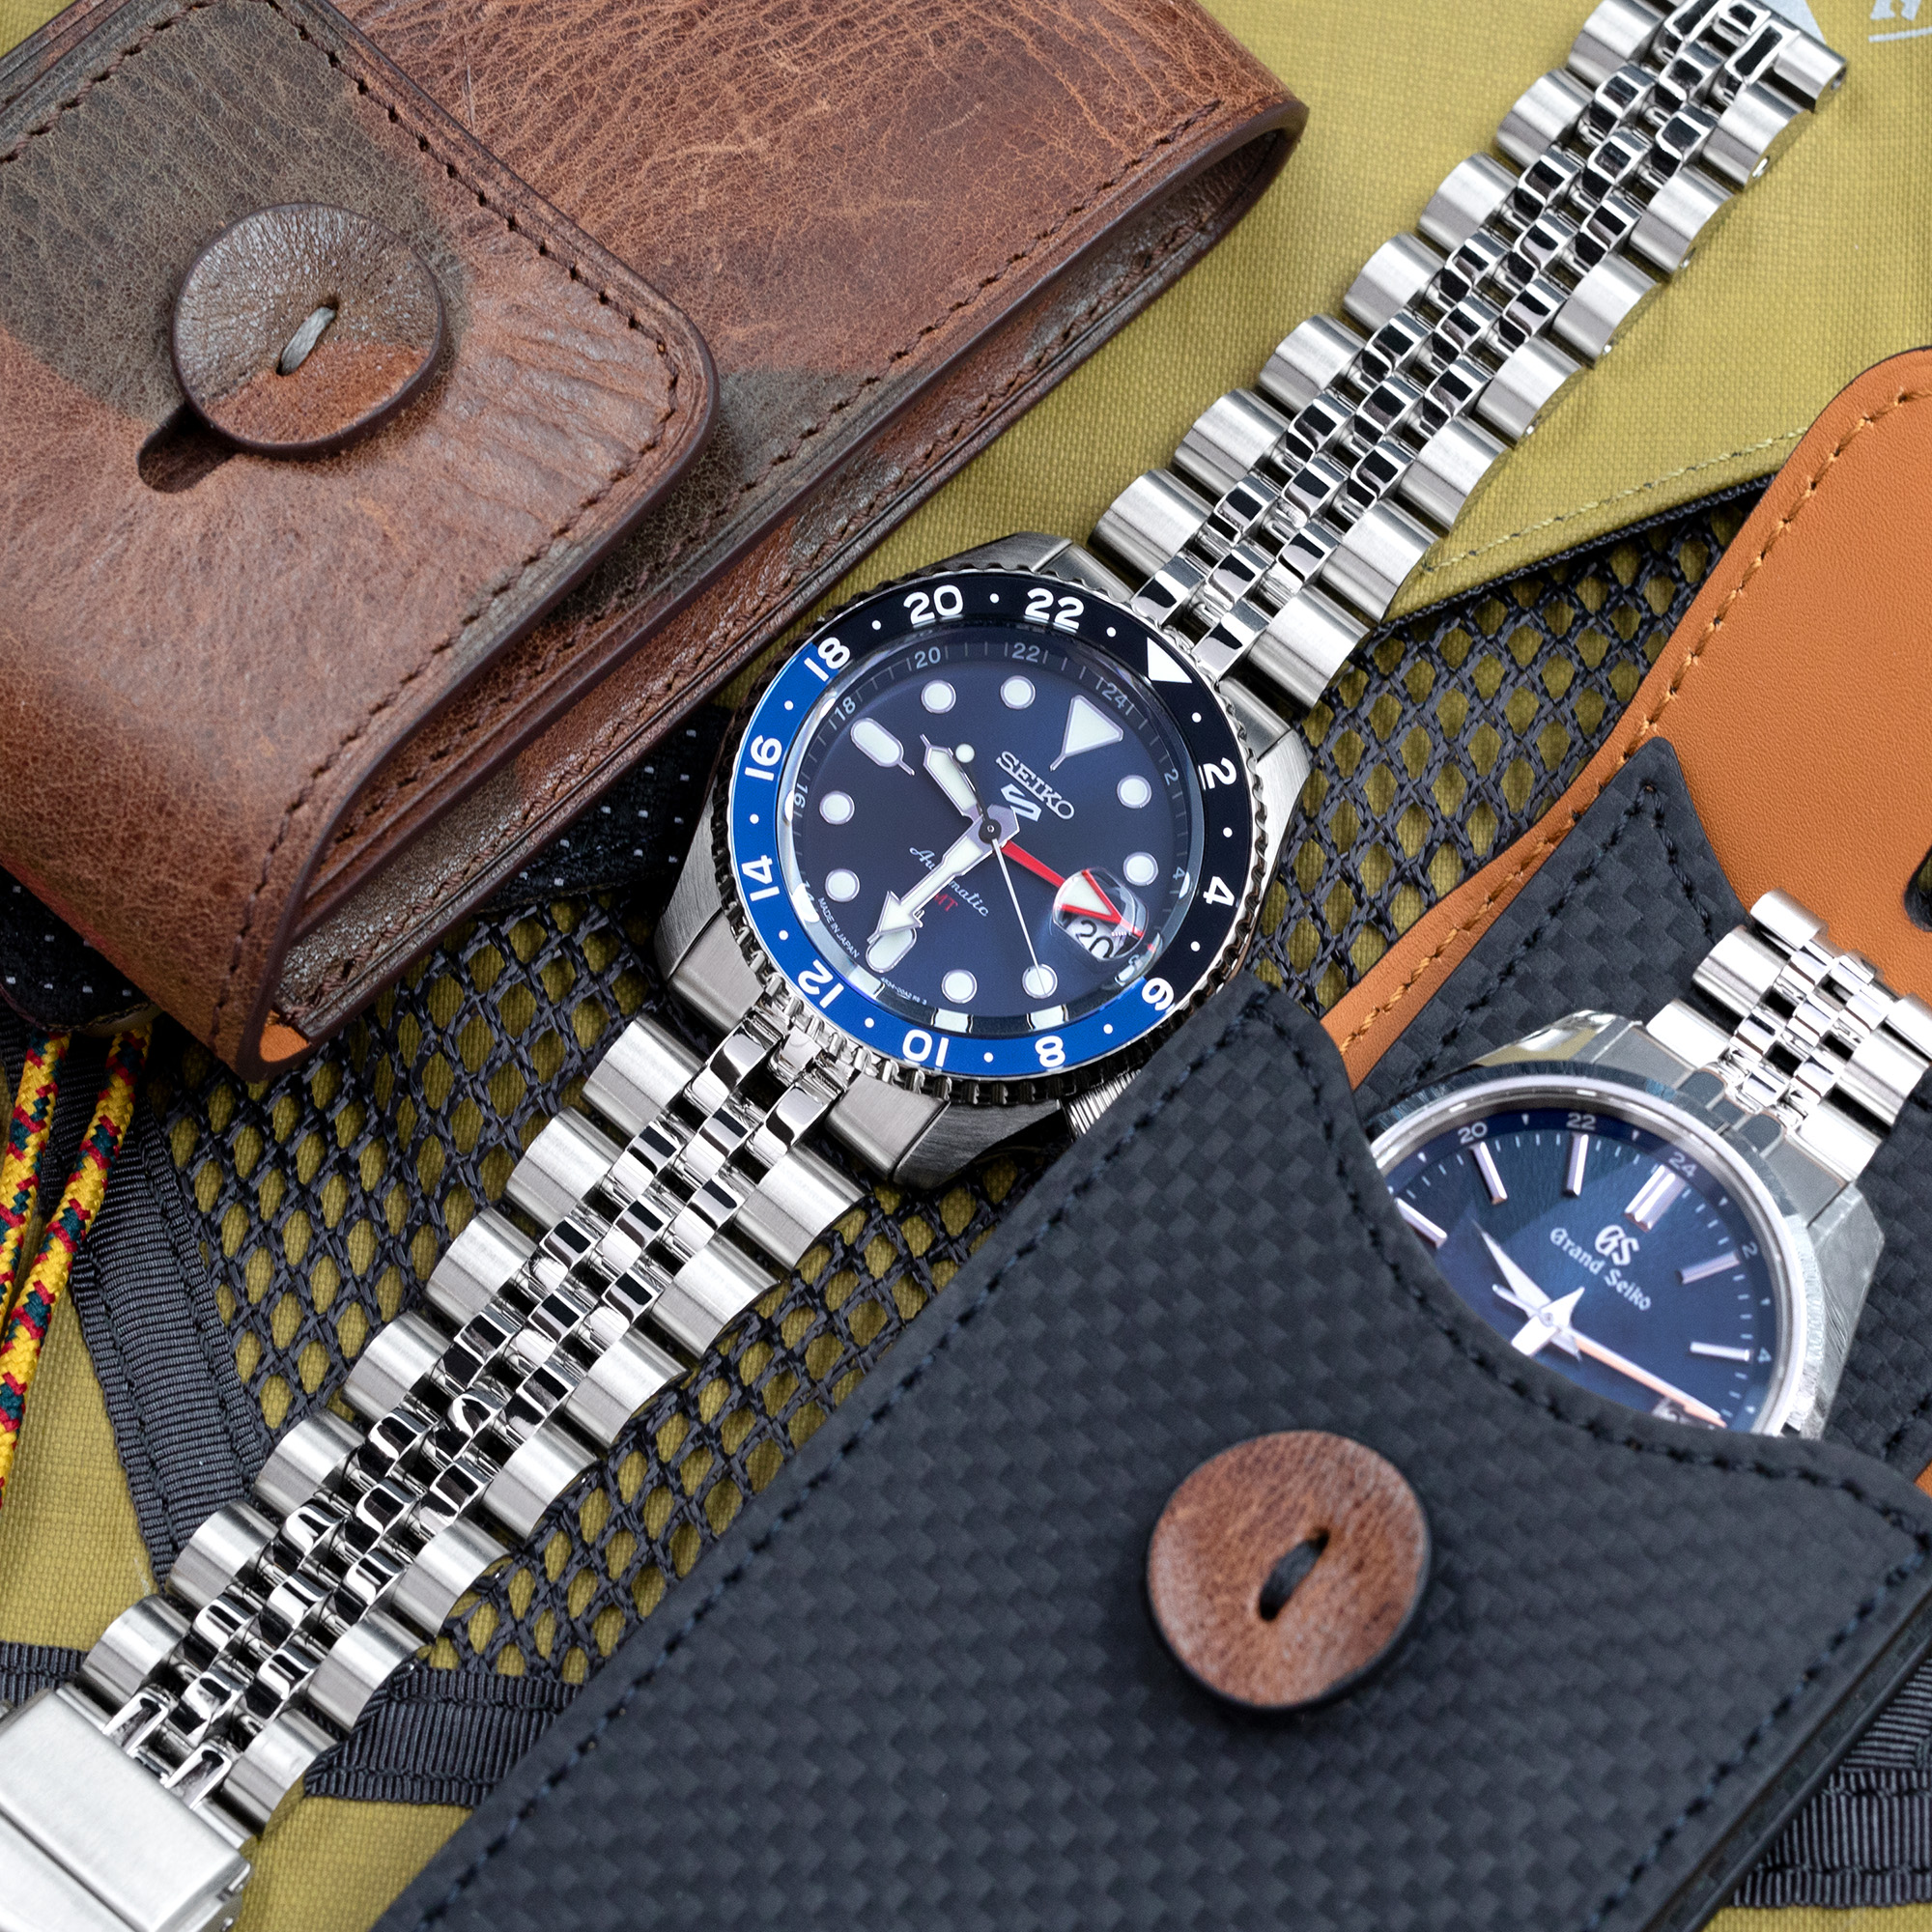 想攜帶喜愛的手錶一起旅行？這裡有六個小貼士助你如何保管它們。